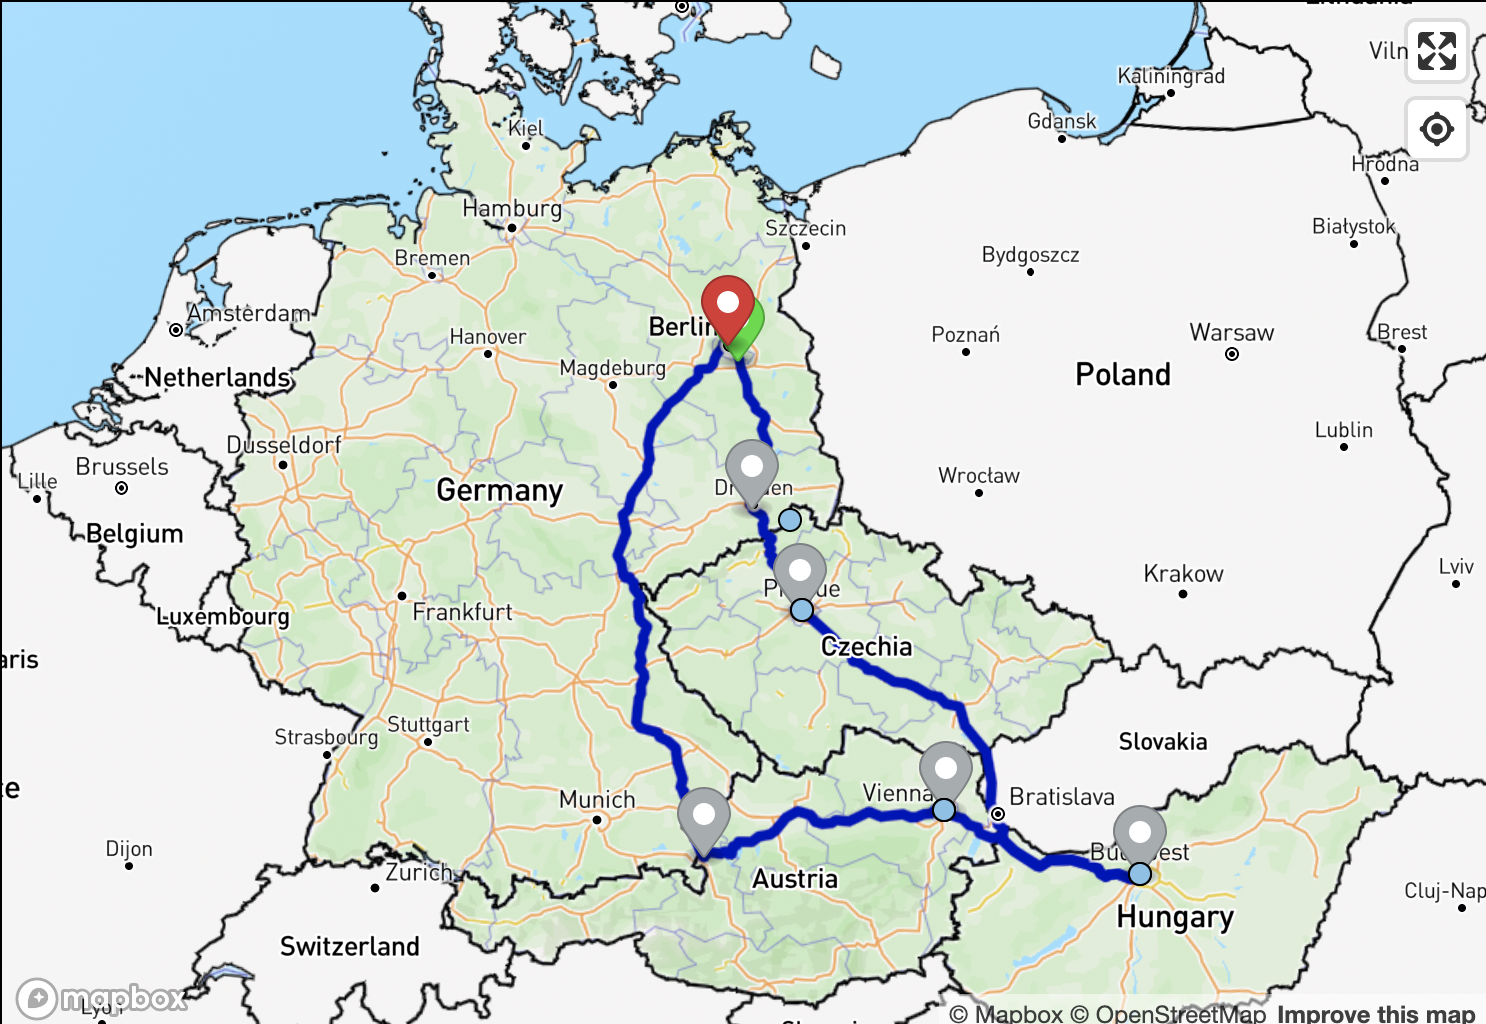 Our 2023 European tour itinerary